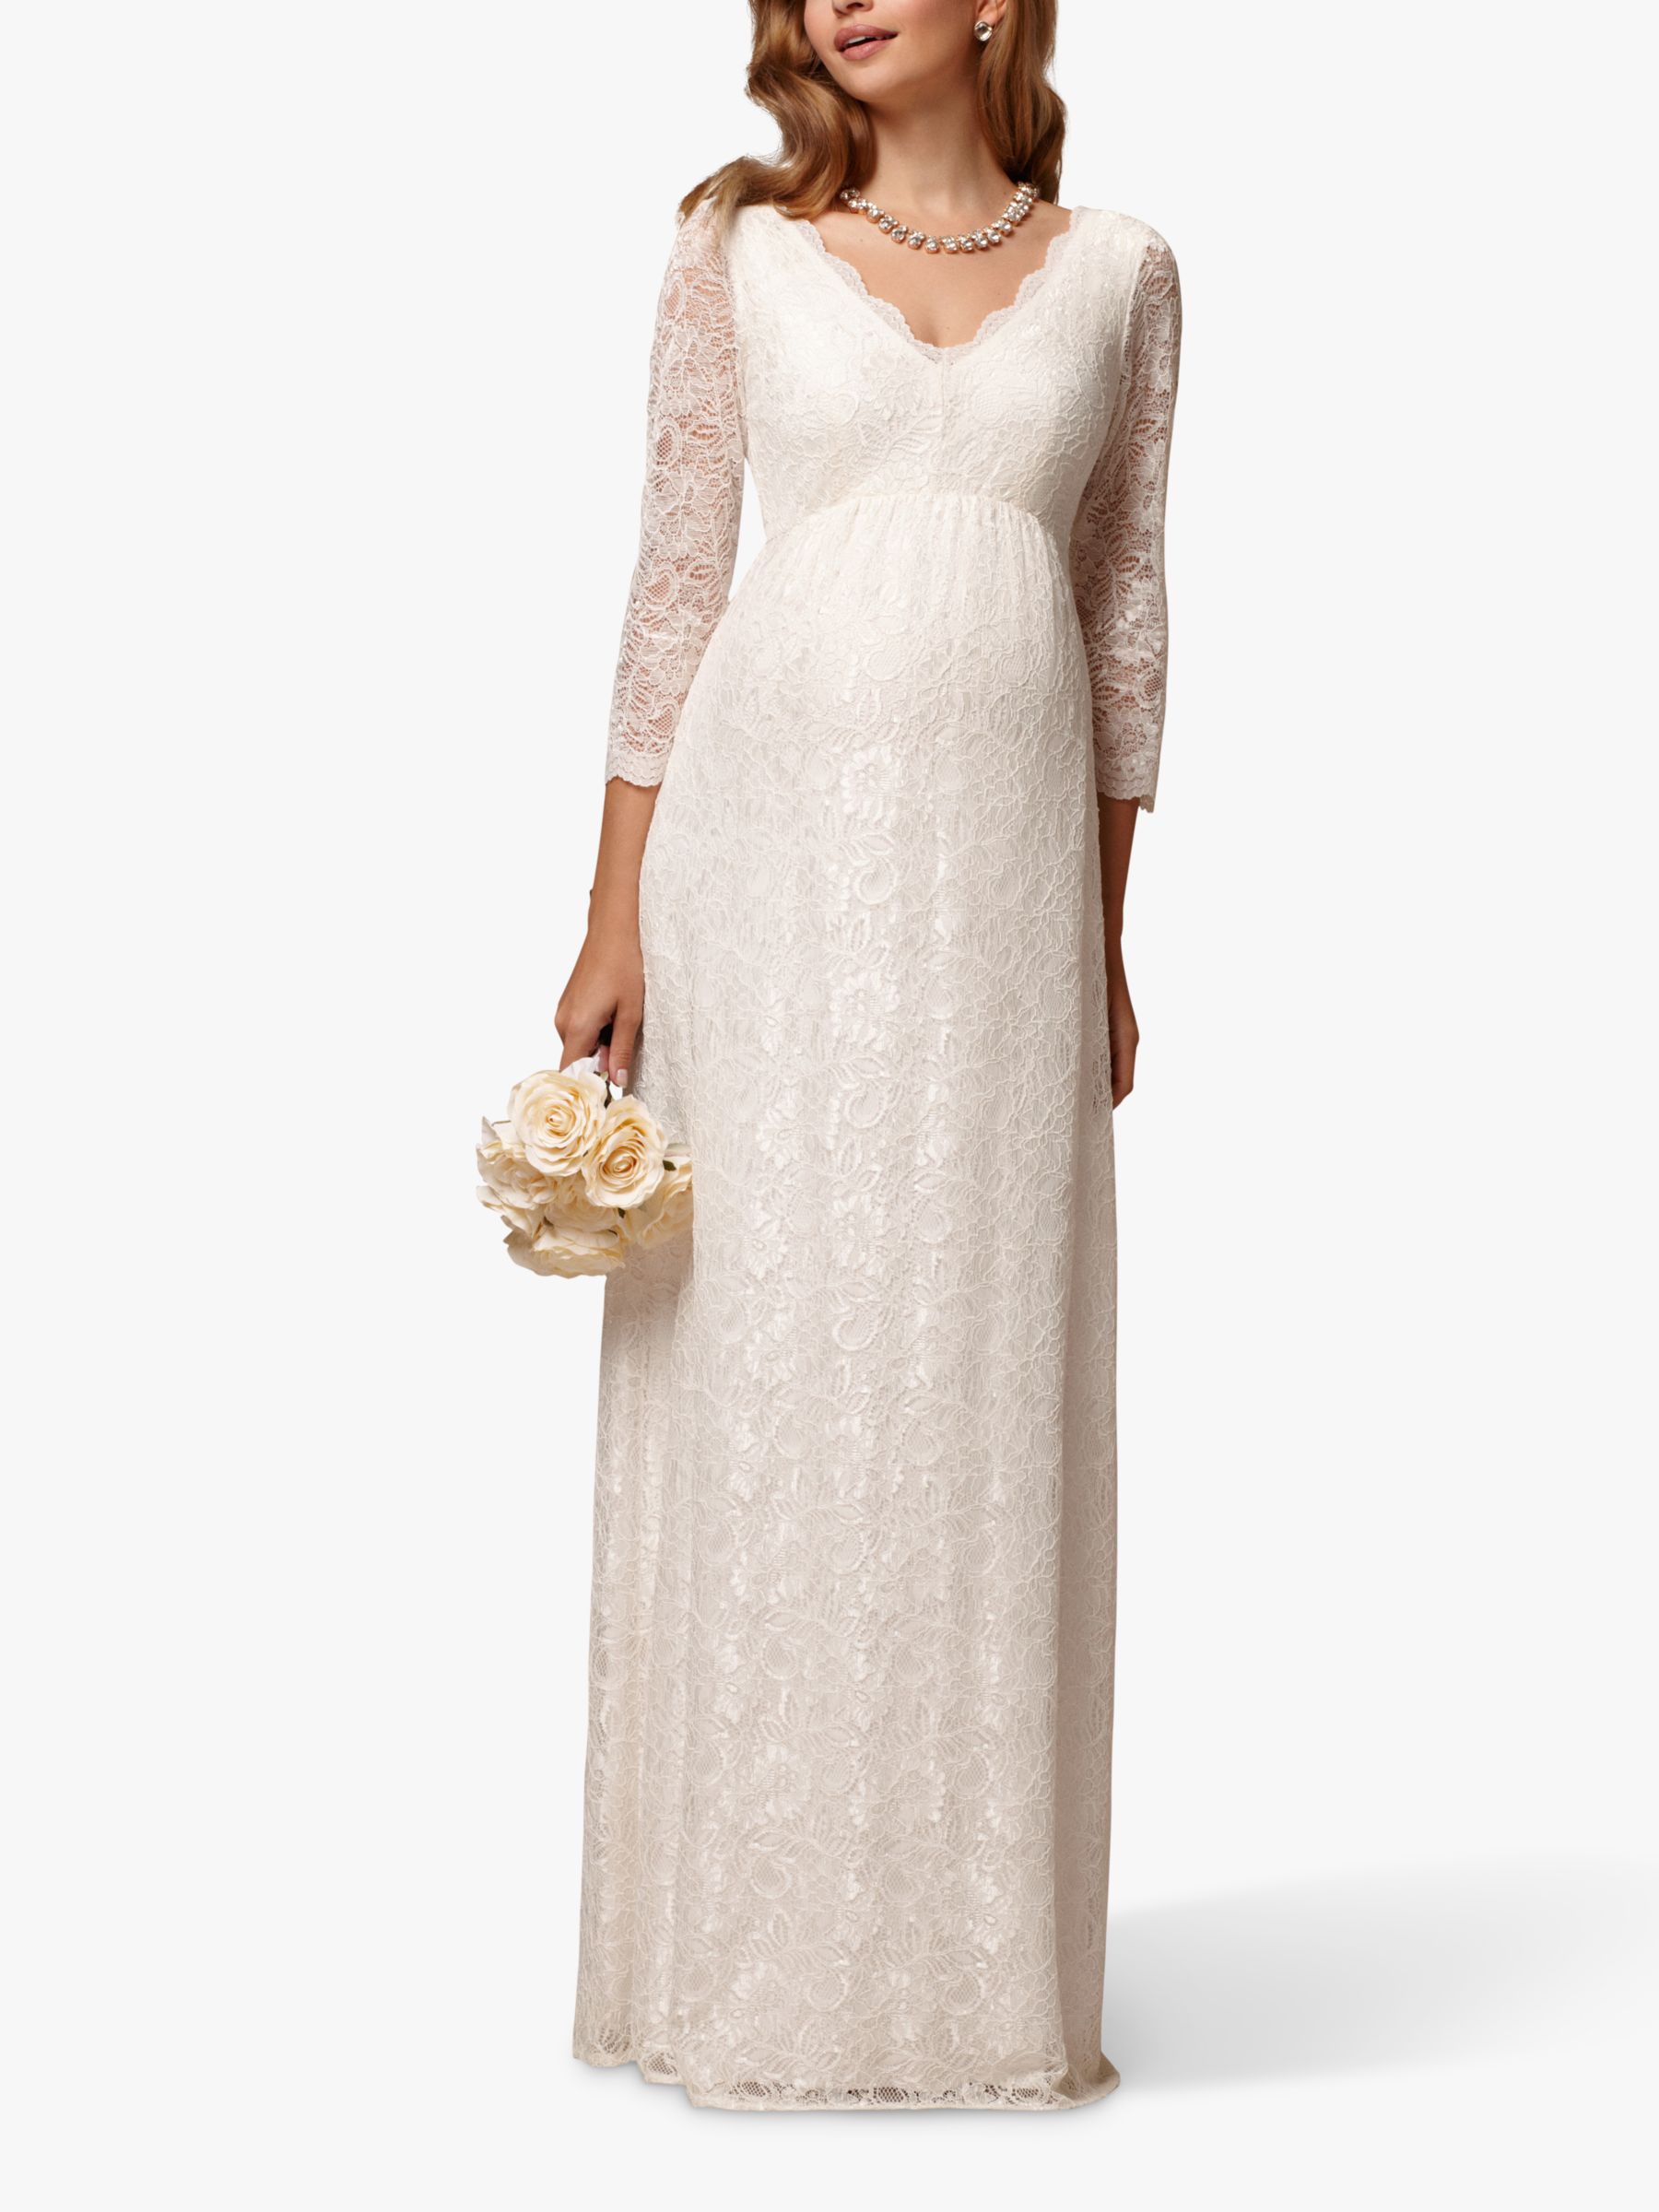 Tiffany Rose Chloe Lace Maternity Wedding Dress, Ivory, 6-8